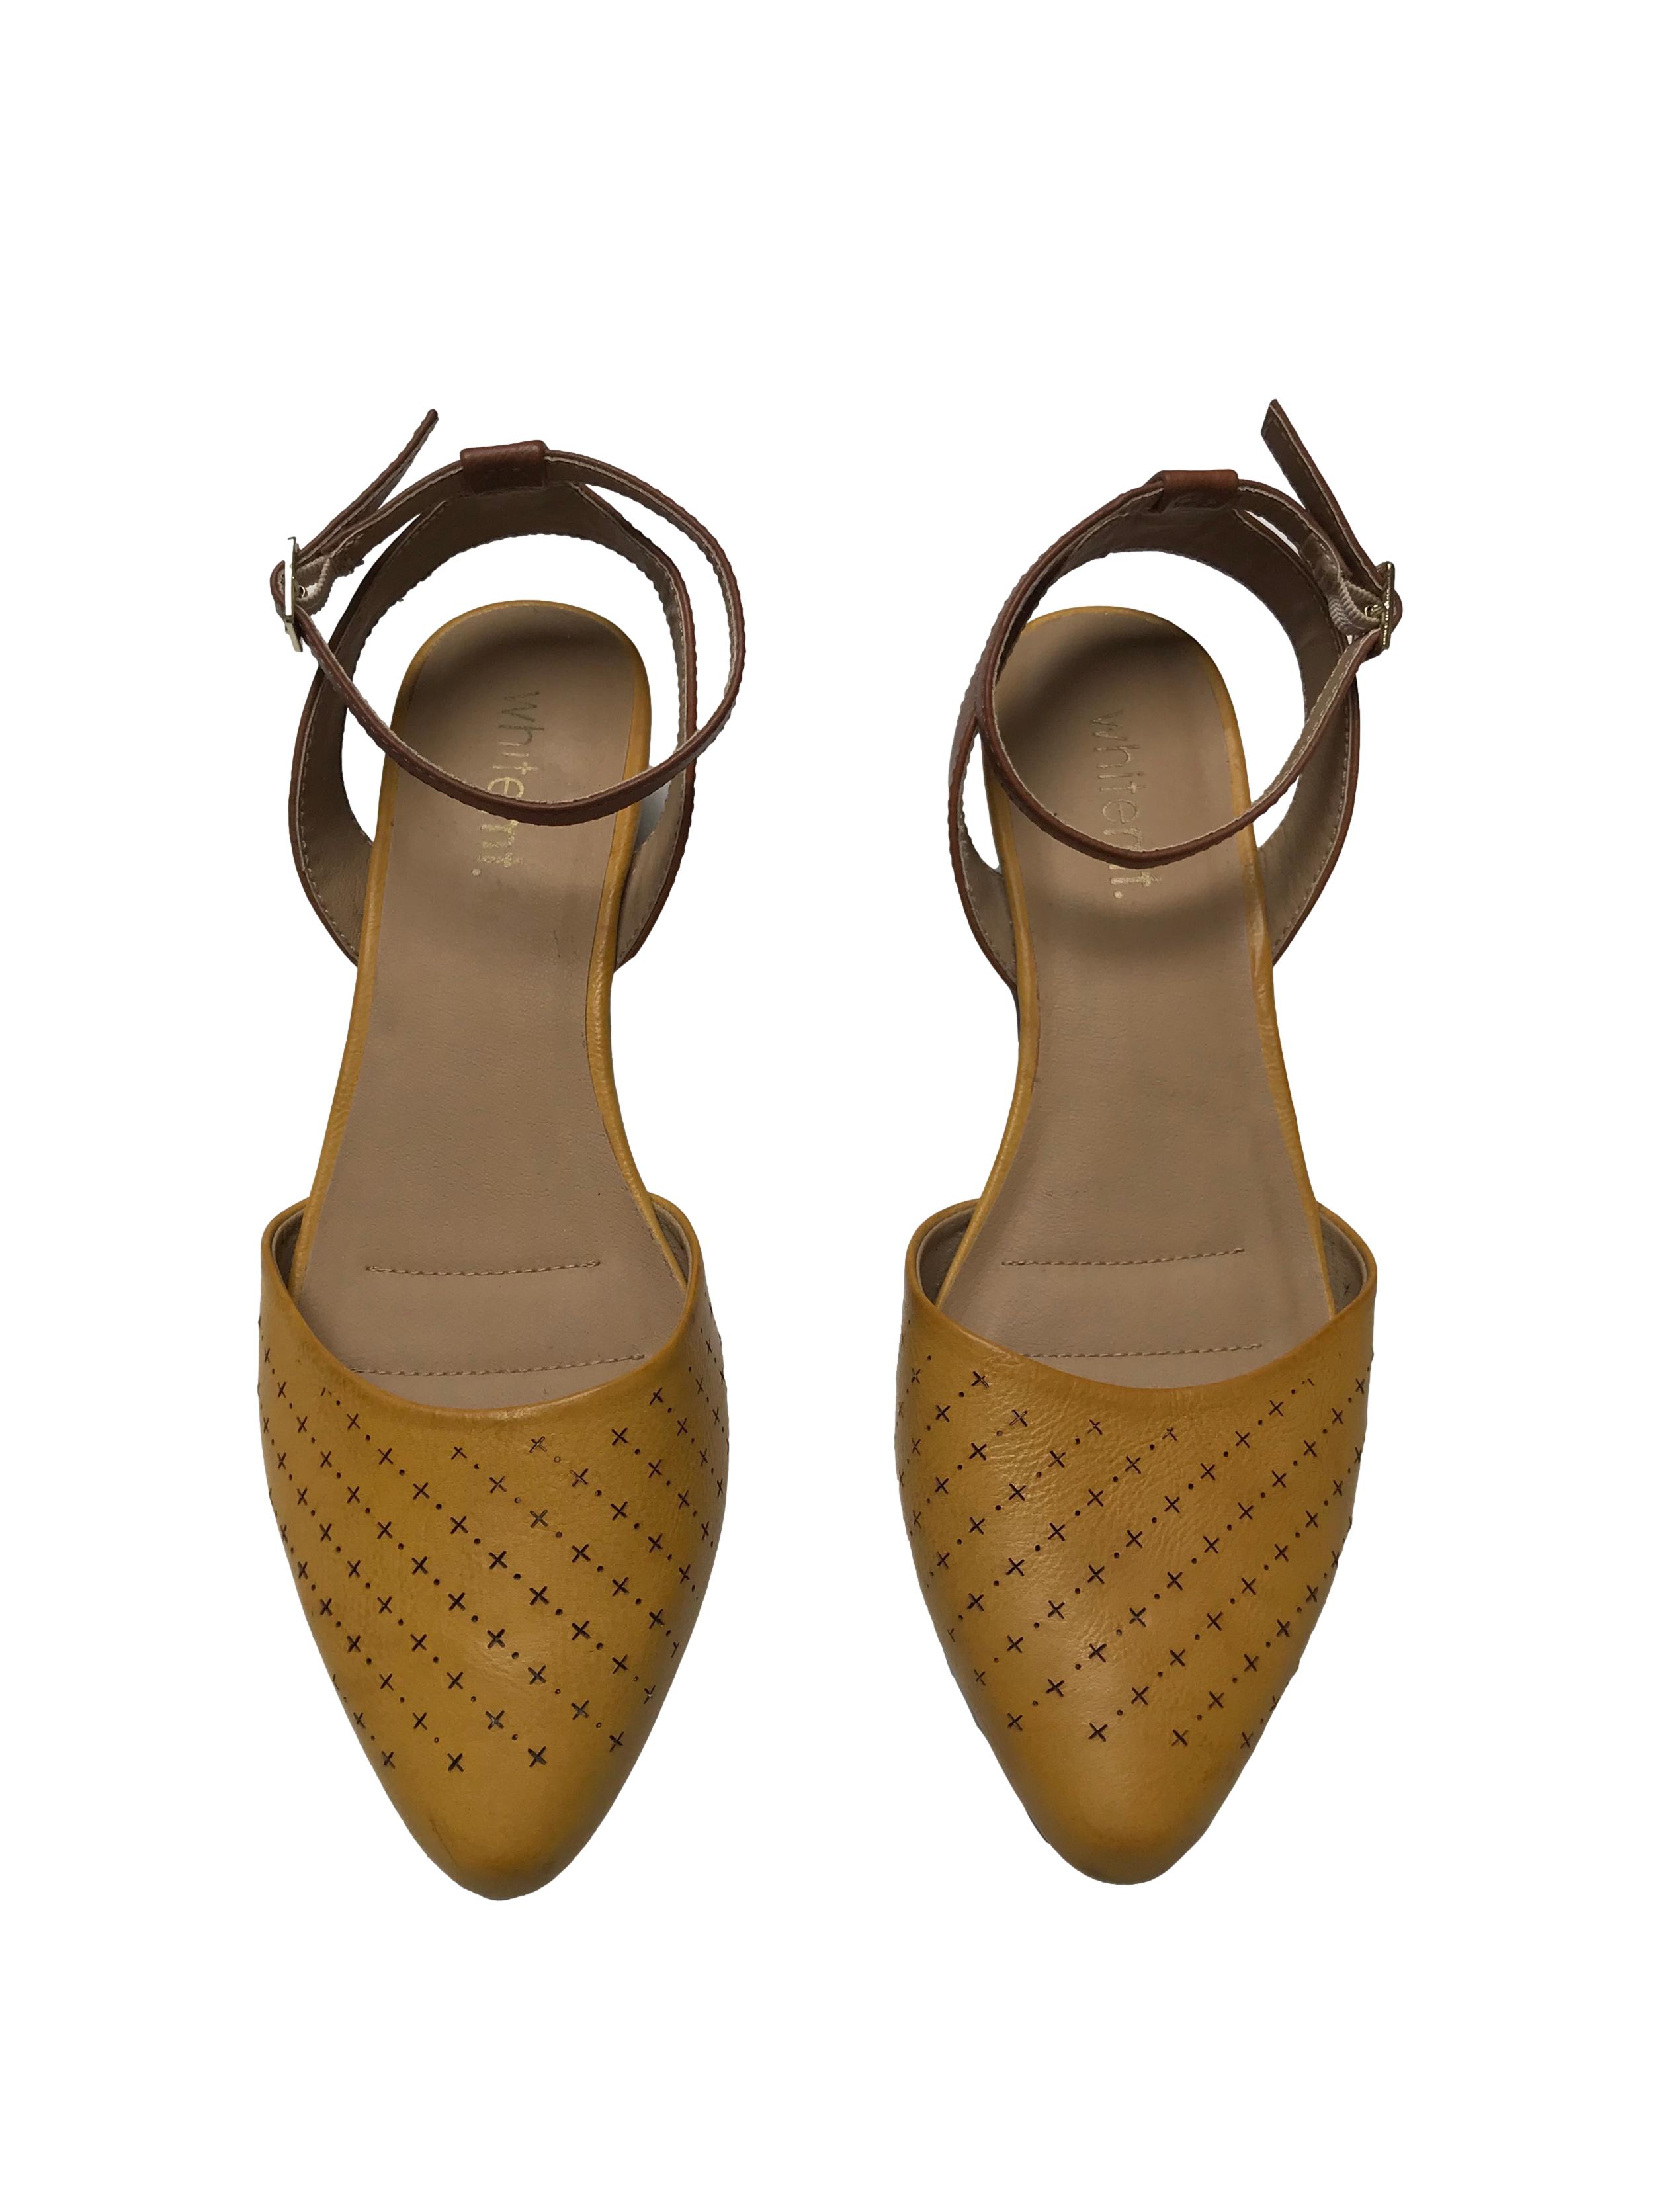 Zapatos Whitemt punta cerrada con diseño marrón, correa al tobillo, taco 4cm. Estado 8.5/10